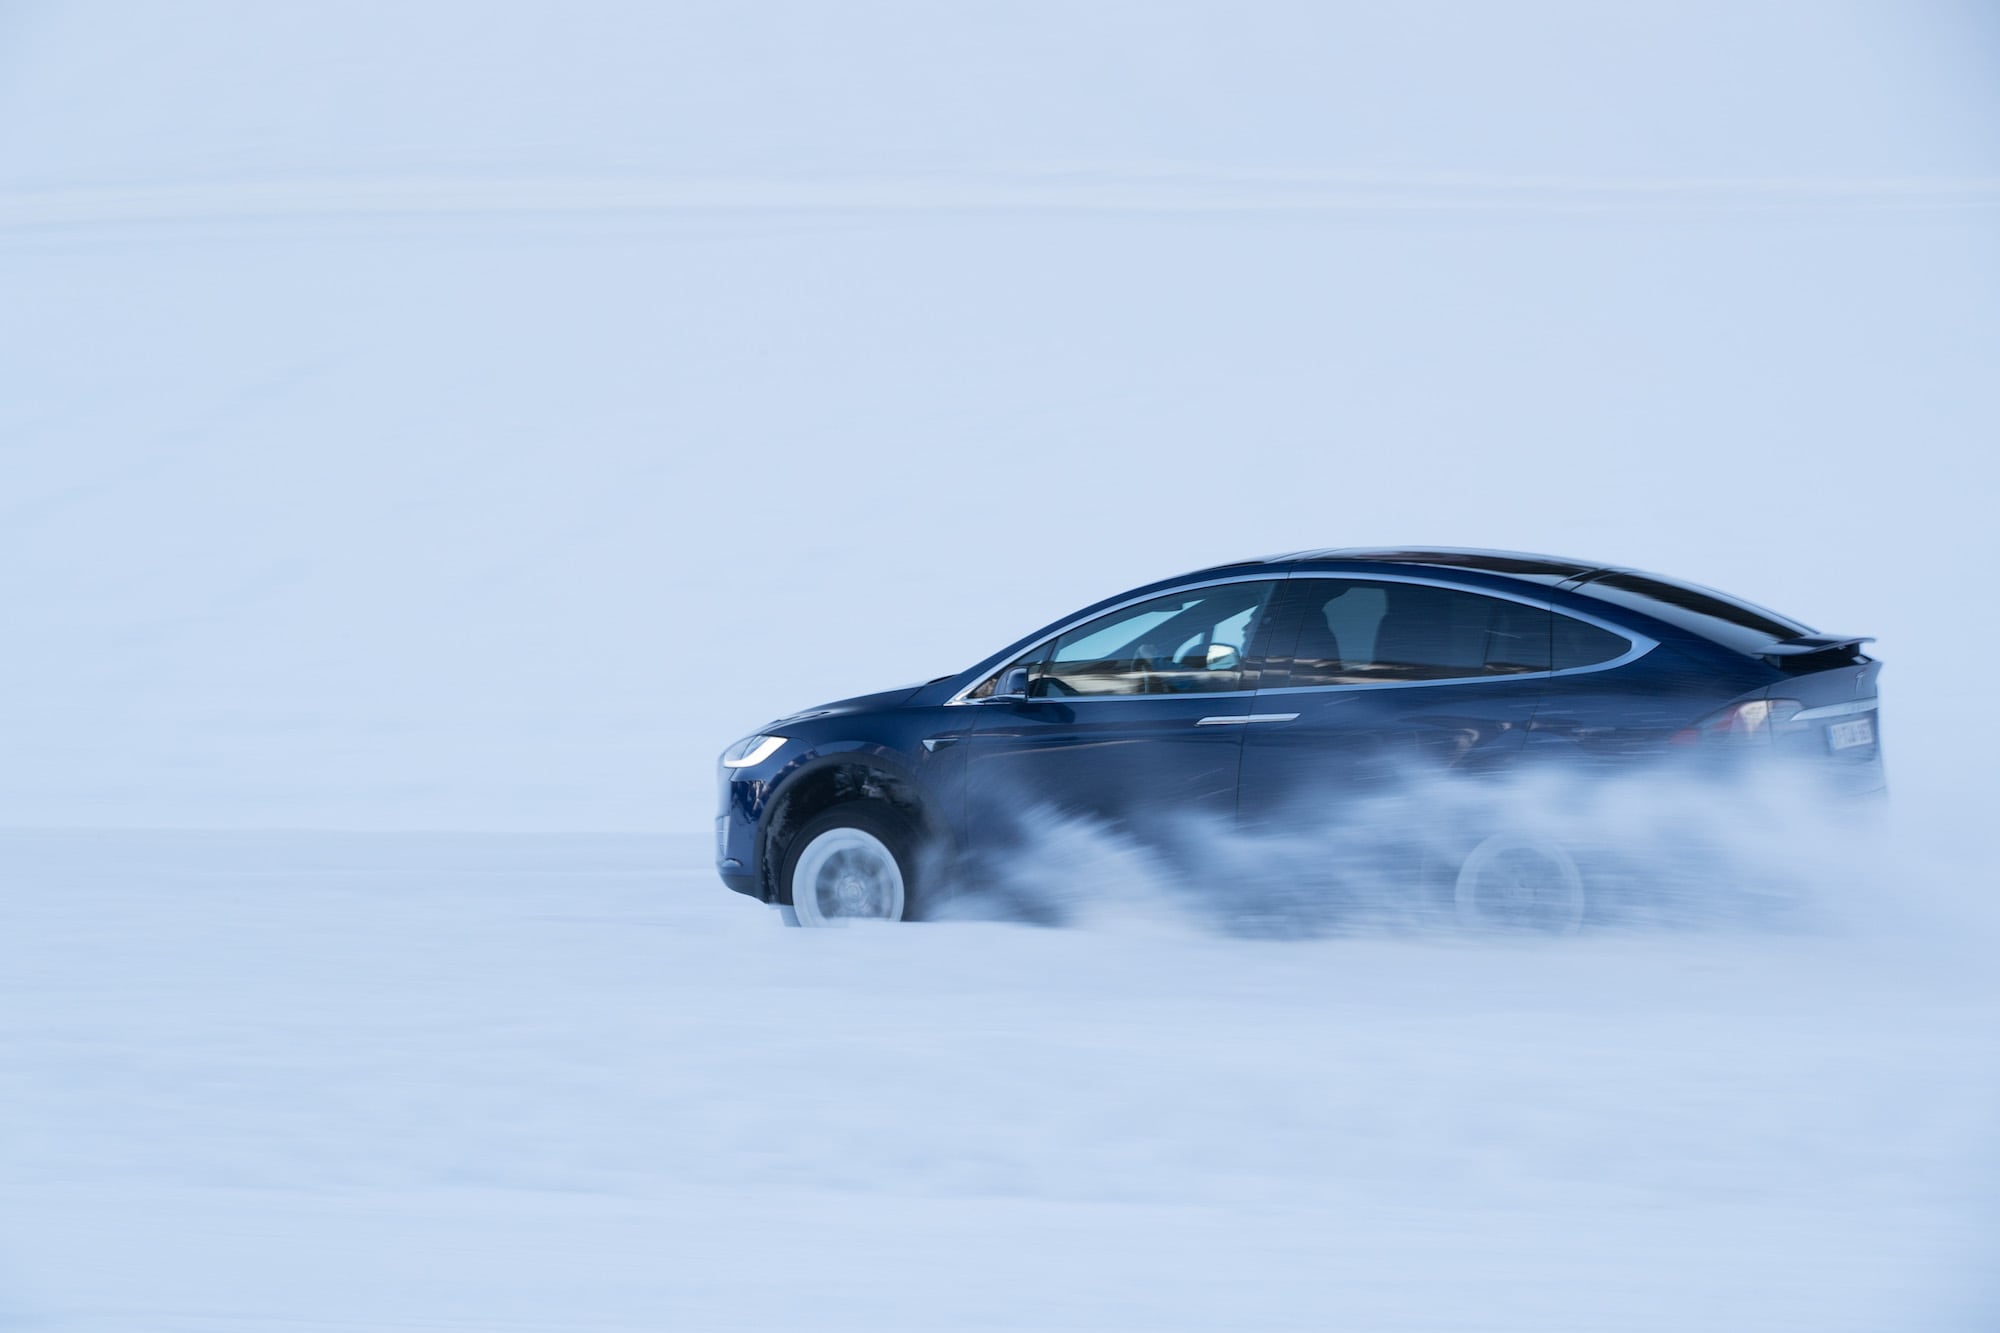 Härteprobe unter winterlichen Bedingungen: Die Tesla Winter Driving Experience 4